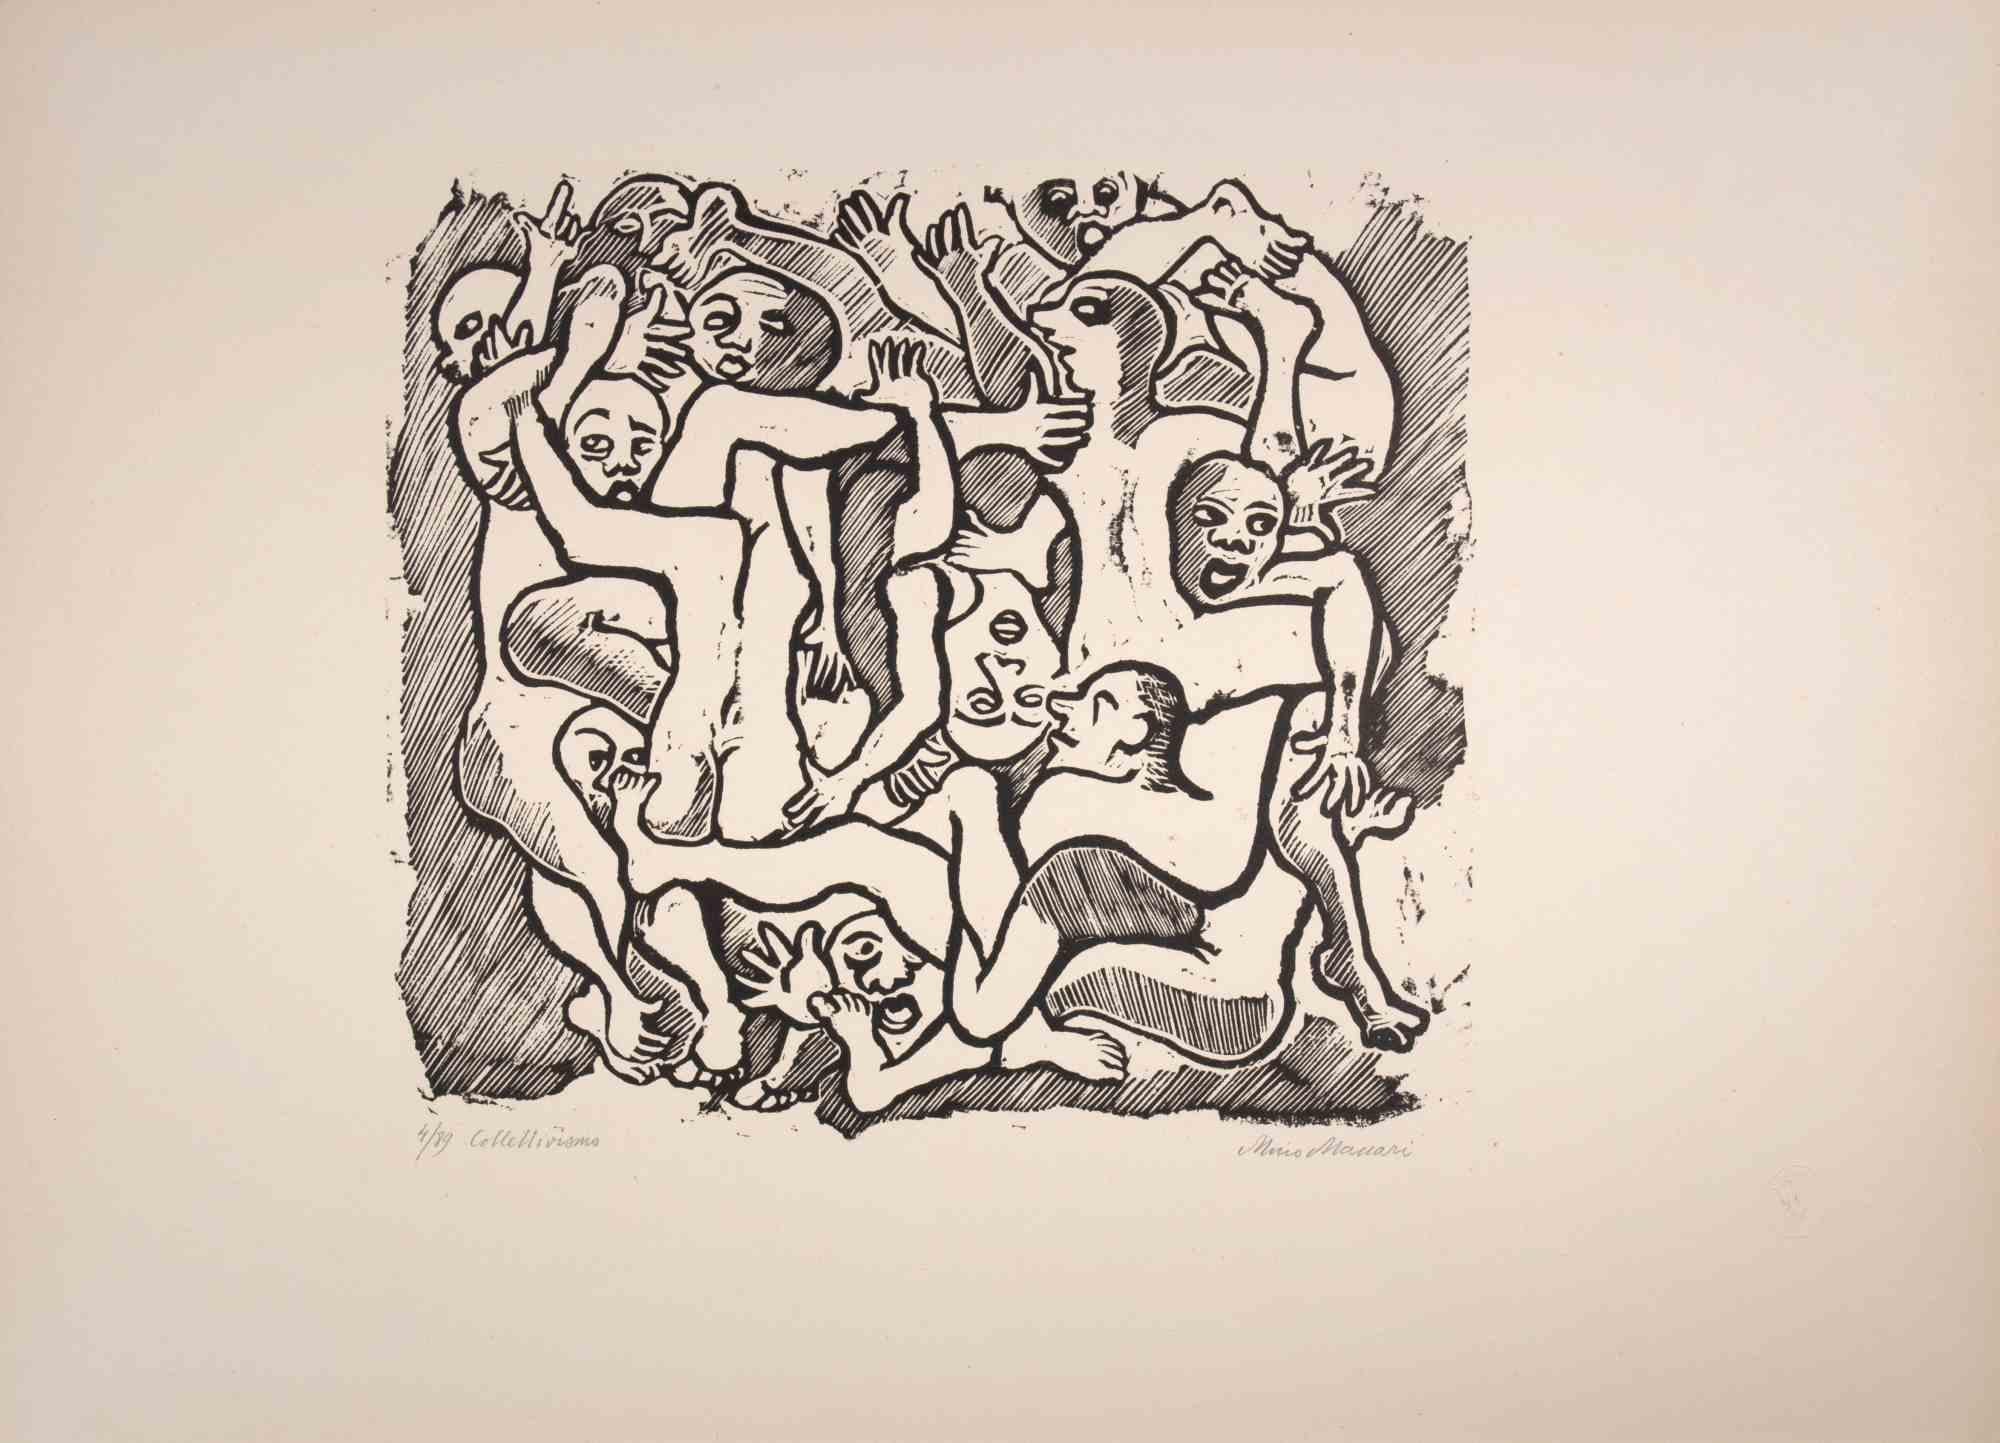 Kollektivismus ist ein Kunstwerk von Mino Maccari (1924-1989) aus der Mitte des 20. Jahrhunderts.

B./W. Holzschnitt auf Papier. Unten handsigniert, nummeriert 4/89 Exemplare und am linken Rand betitelt.

Gute Bedingungen.

Mino Maccari (Siena,